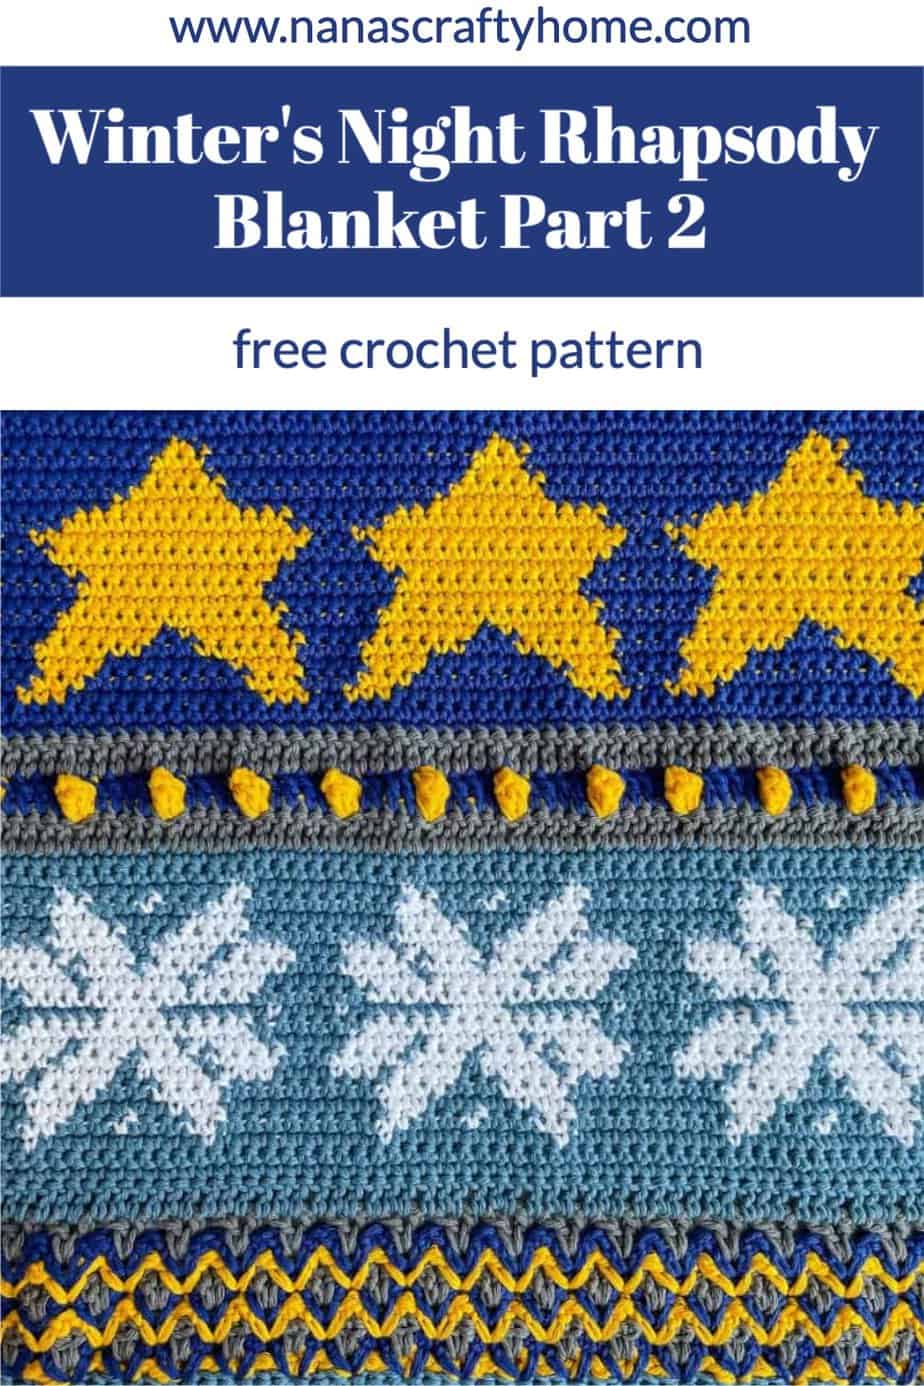 Winter's Night Rhapsody Sampler Crochet Blanket Part 2